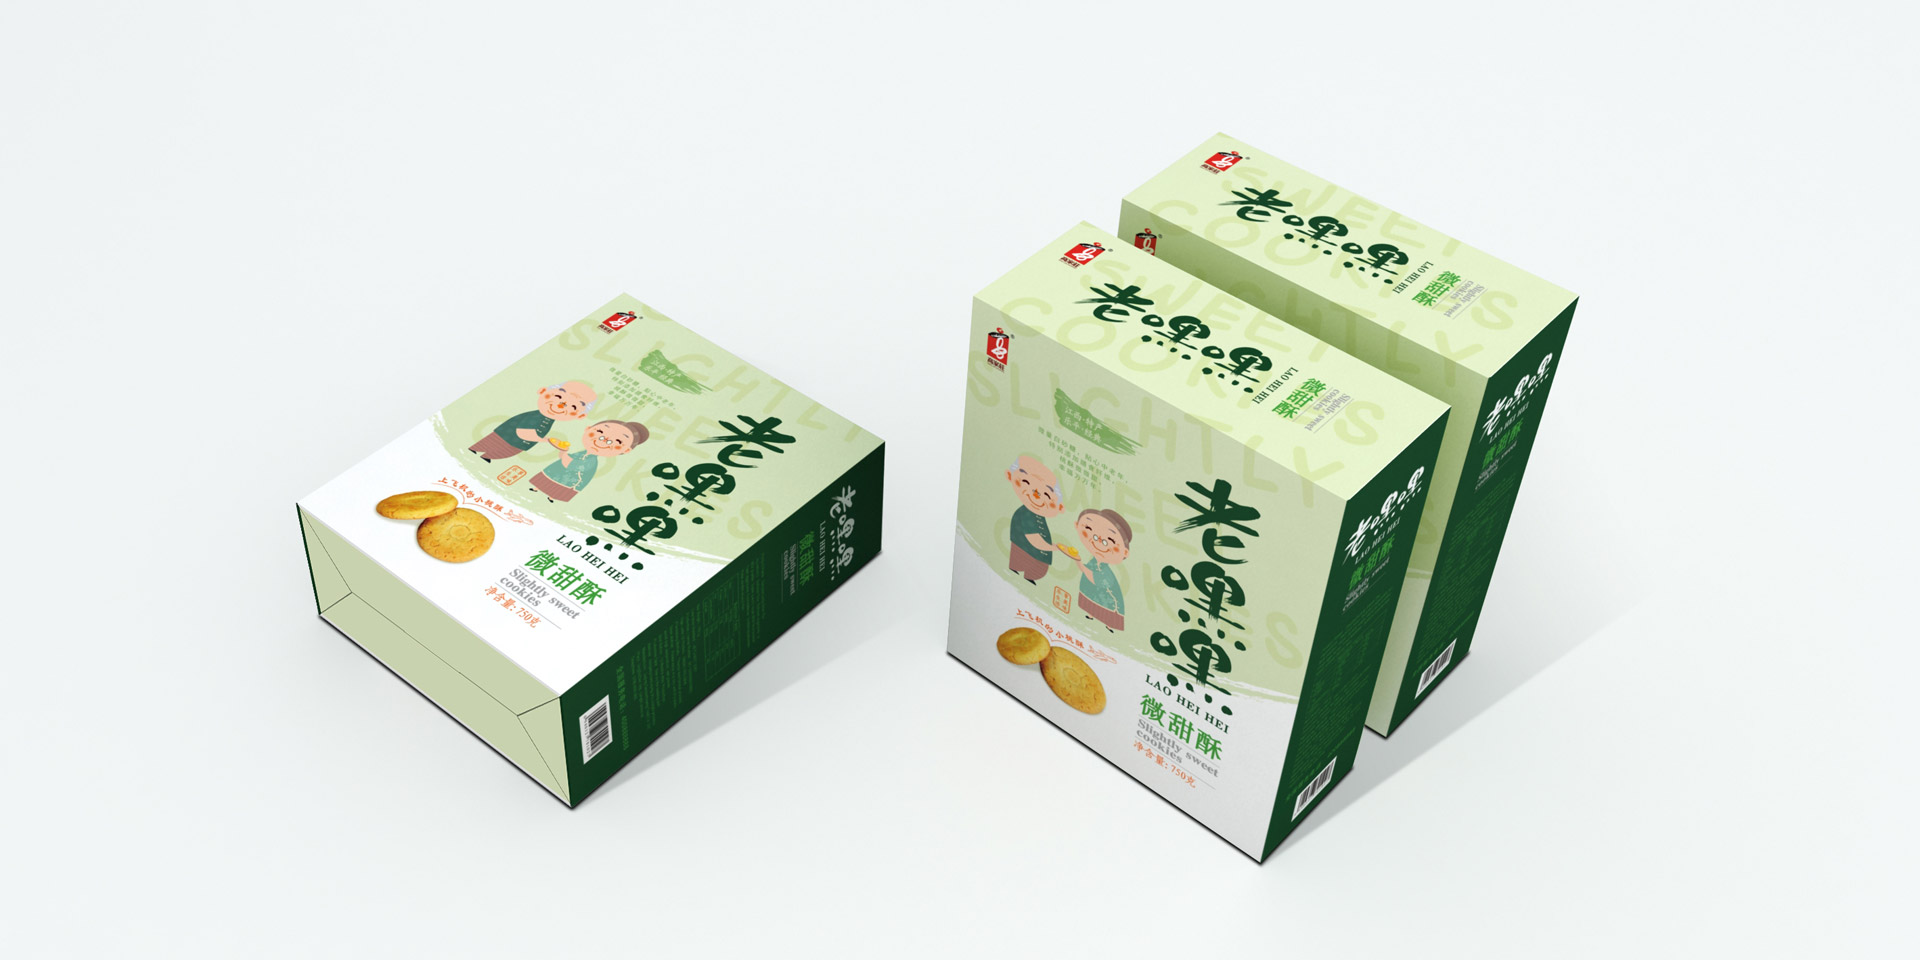 食品包装营销策划设计,包装设计,食品包装设计,上海包装设计公司,上海食品包装设计公司,产品包装设计公司